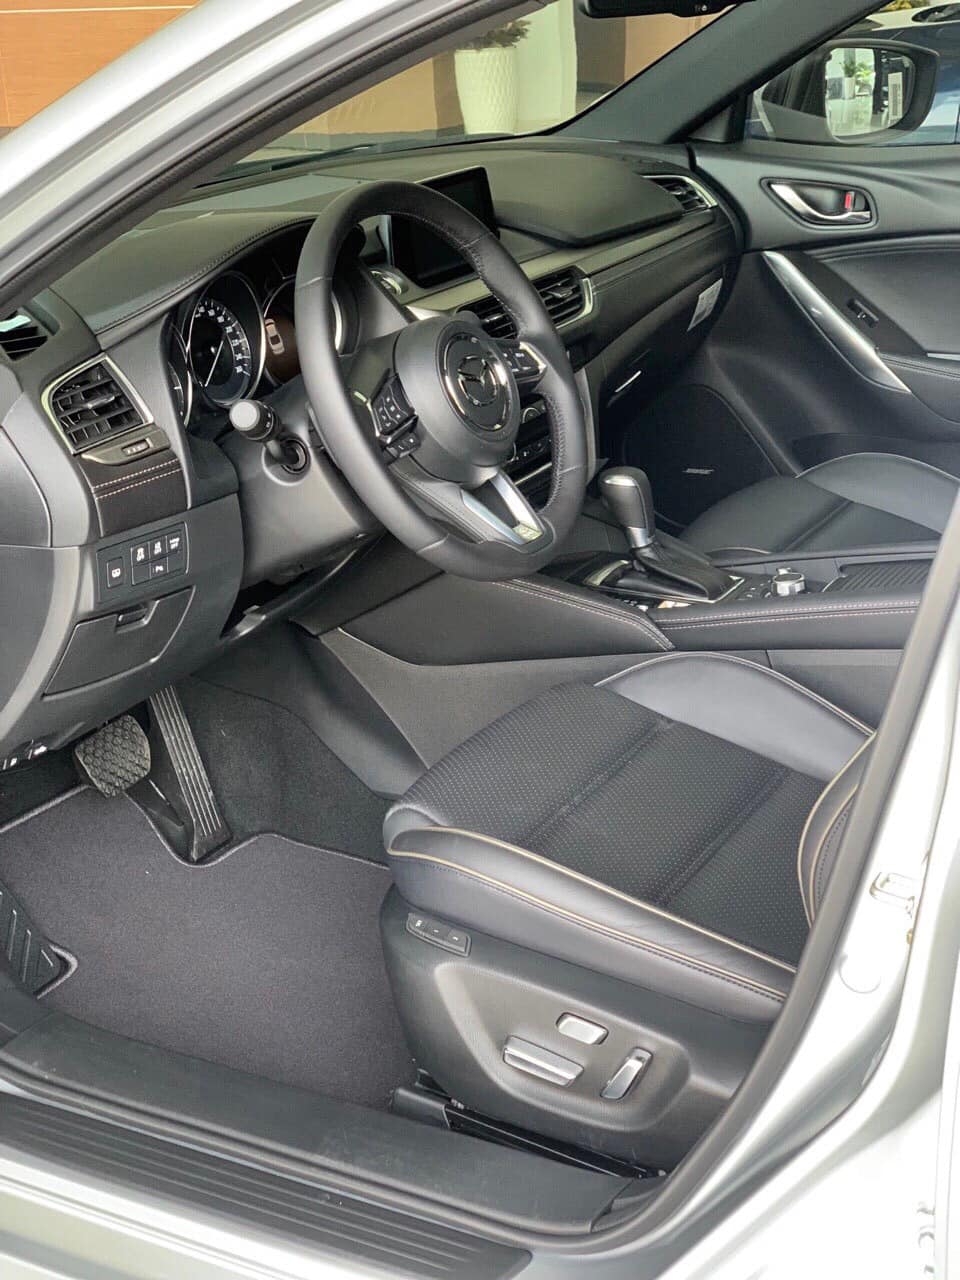 Bán Mazda6 Màu bạc, giảm giá 150 Triệu + tặng BHVC